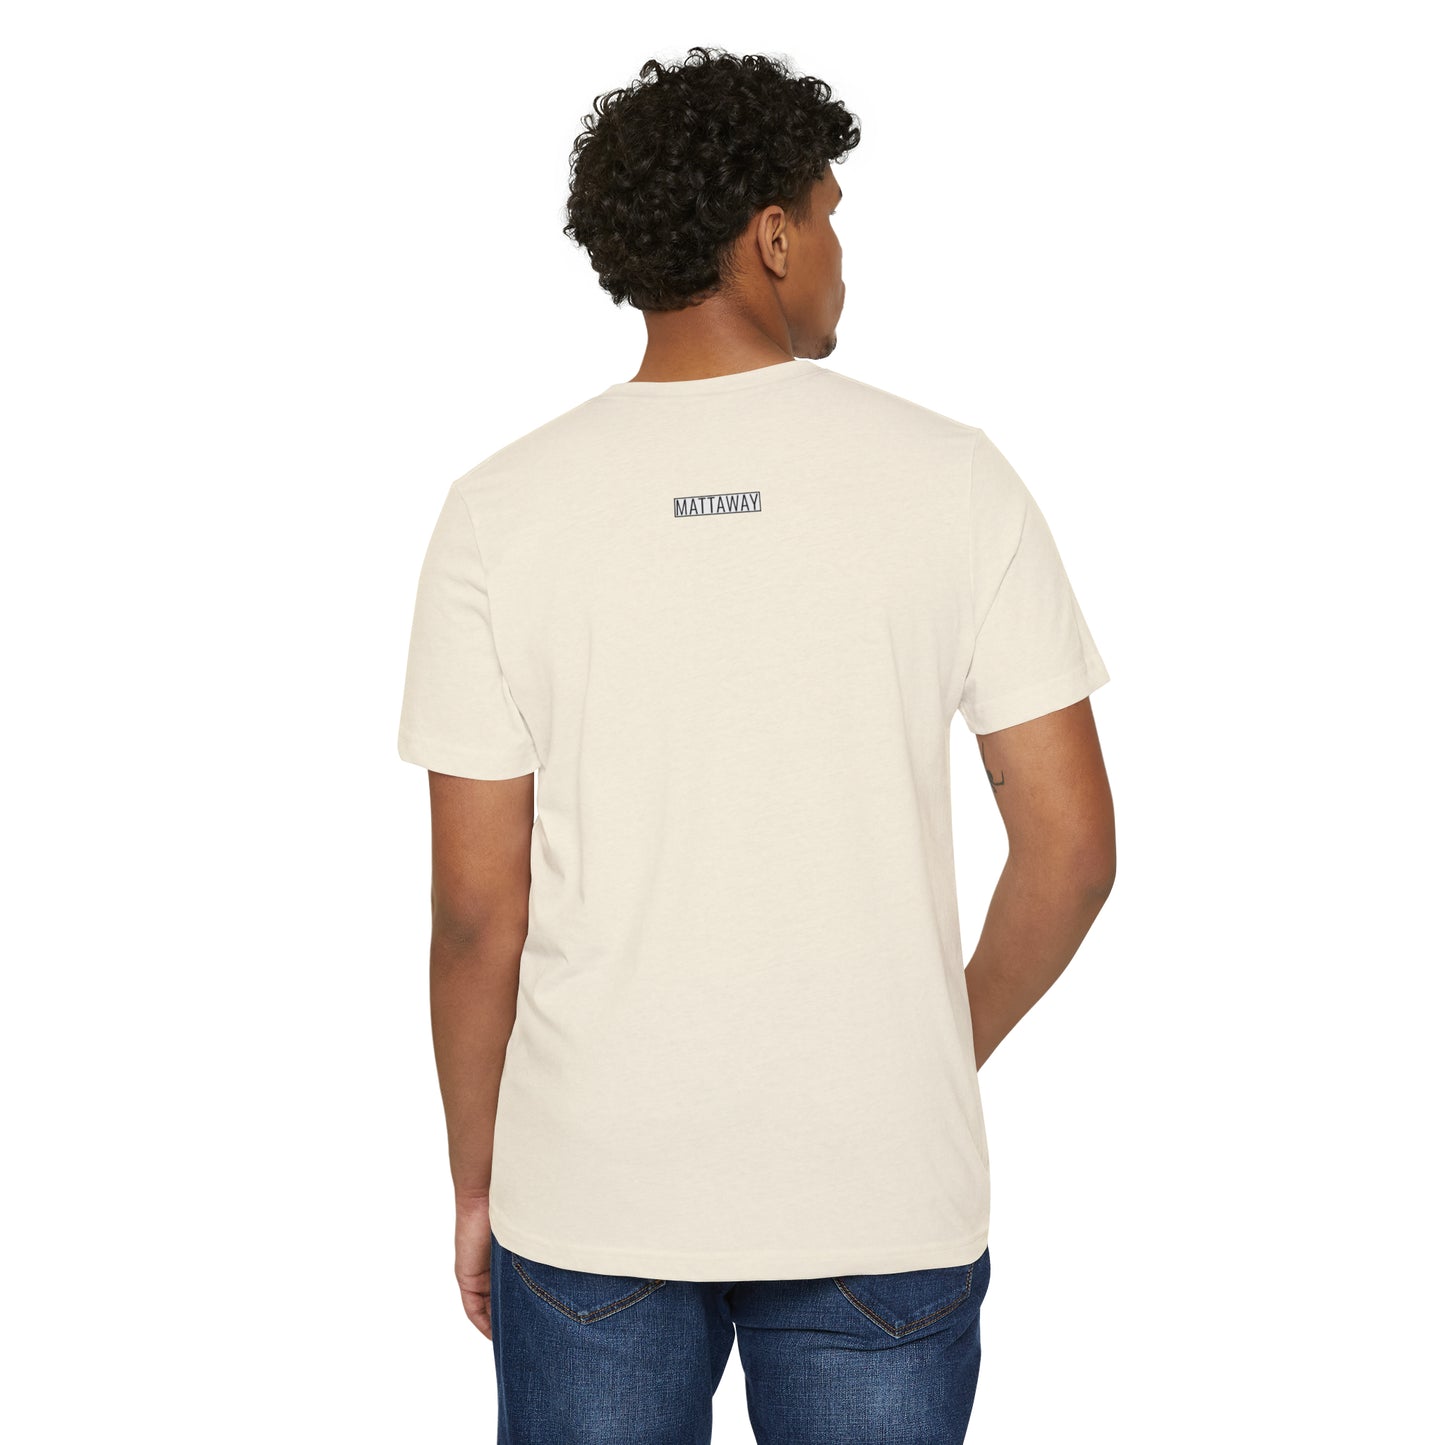 MINIMAL SHAPES 101 - Camiseta ecológica reciclada unisex